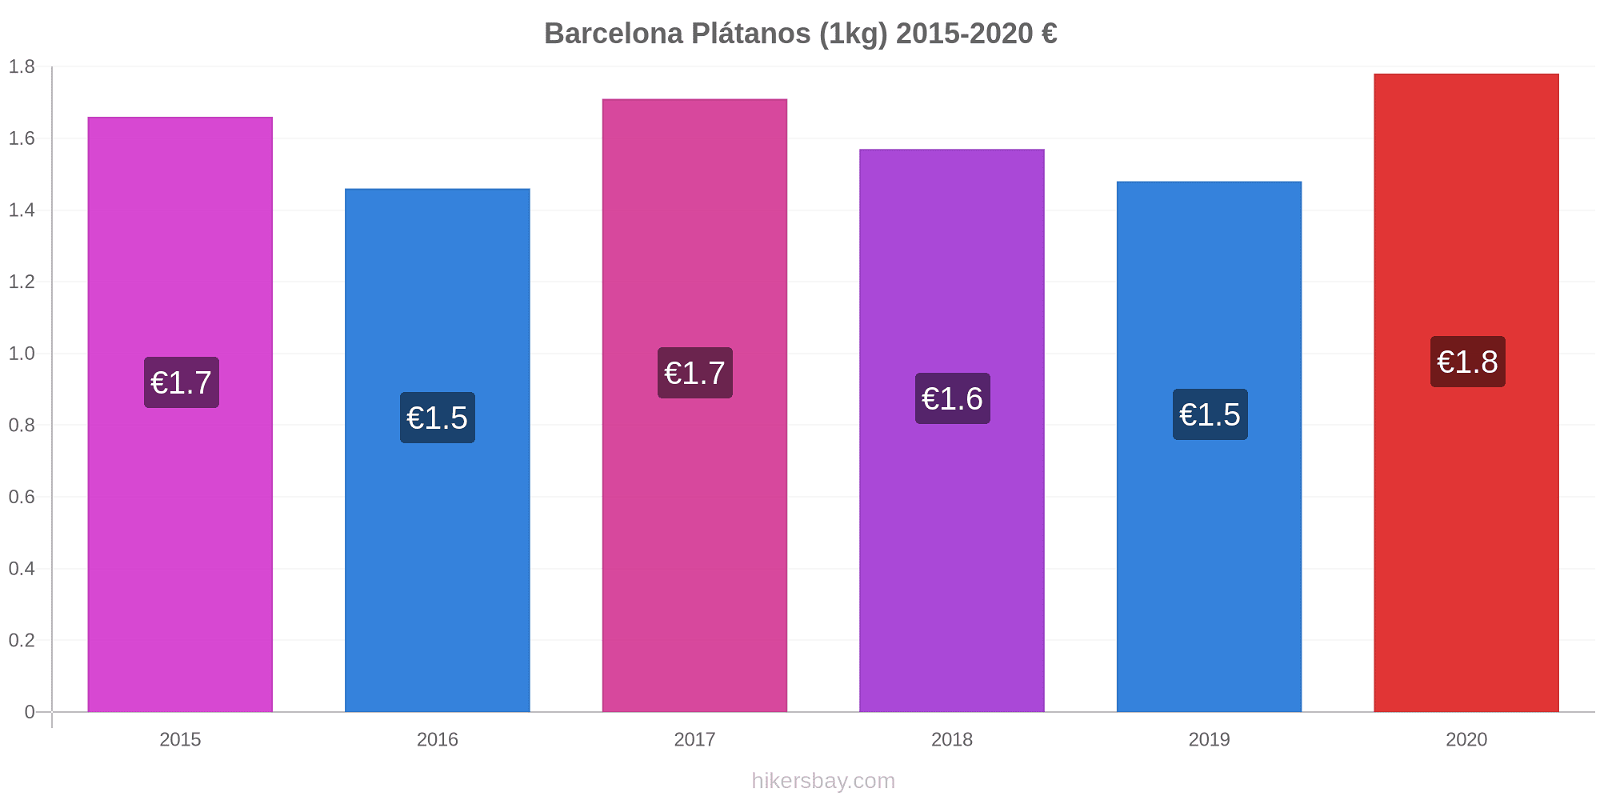 Barcelona cambios de precios Plátano (1kg) hikersbay.com